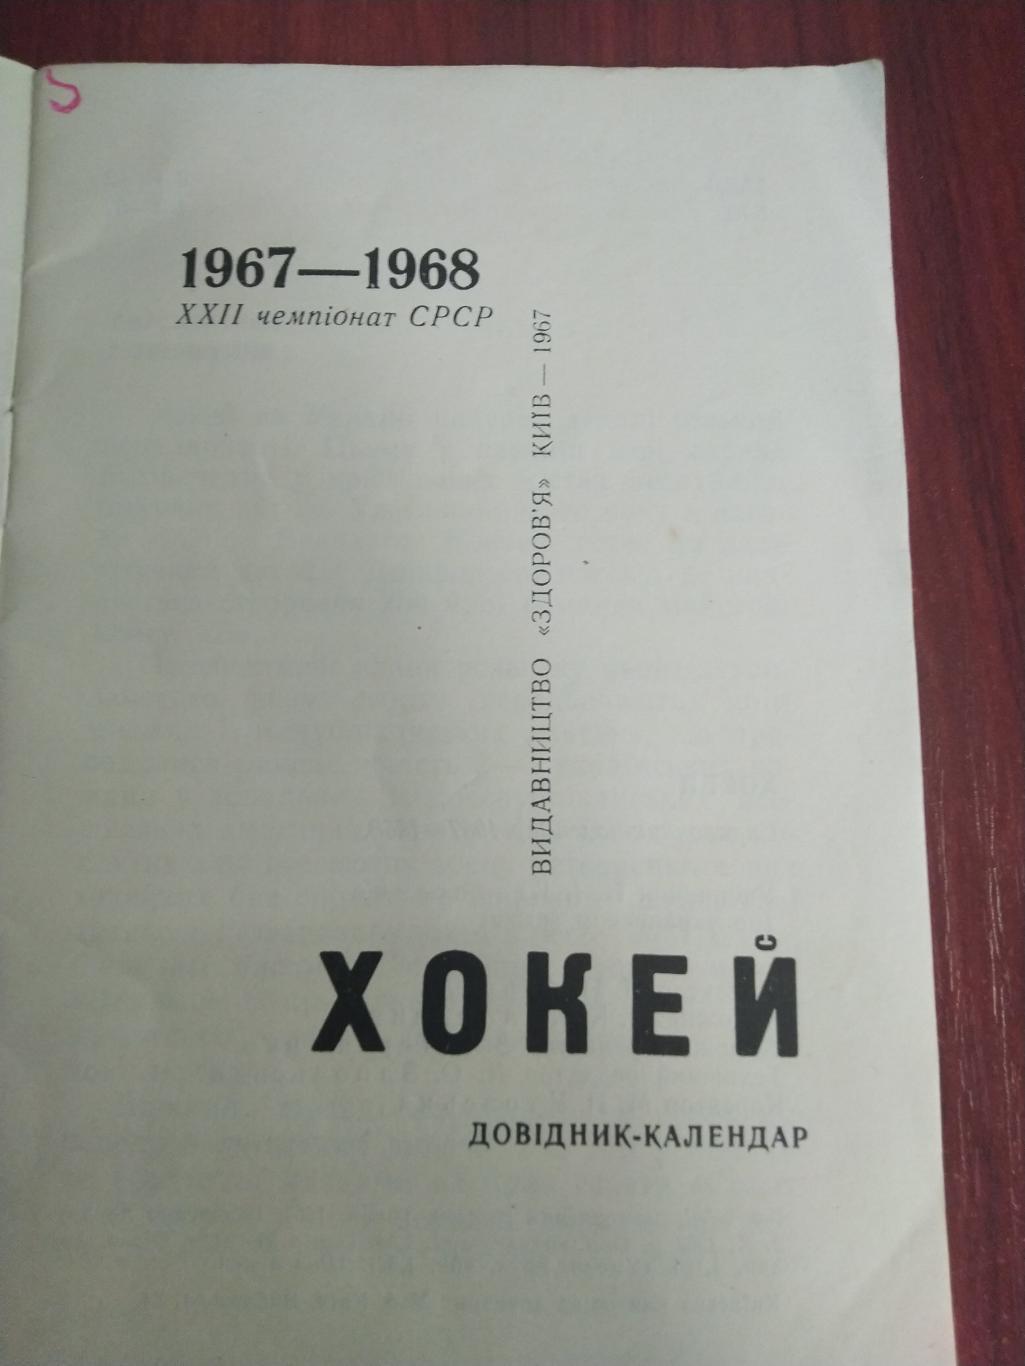 Справочник -календарь Хоккей 1967-1968 Киев 1